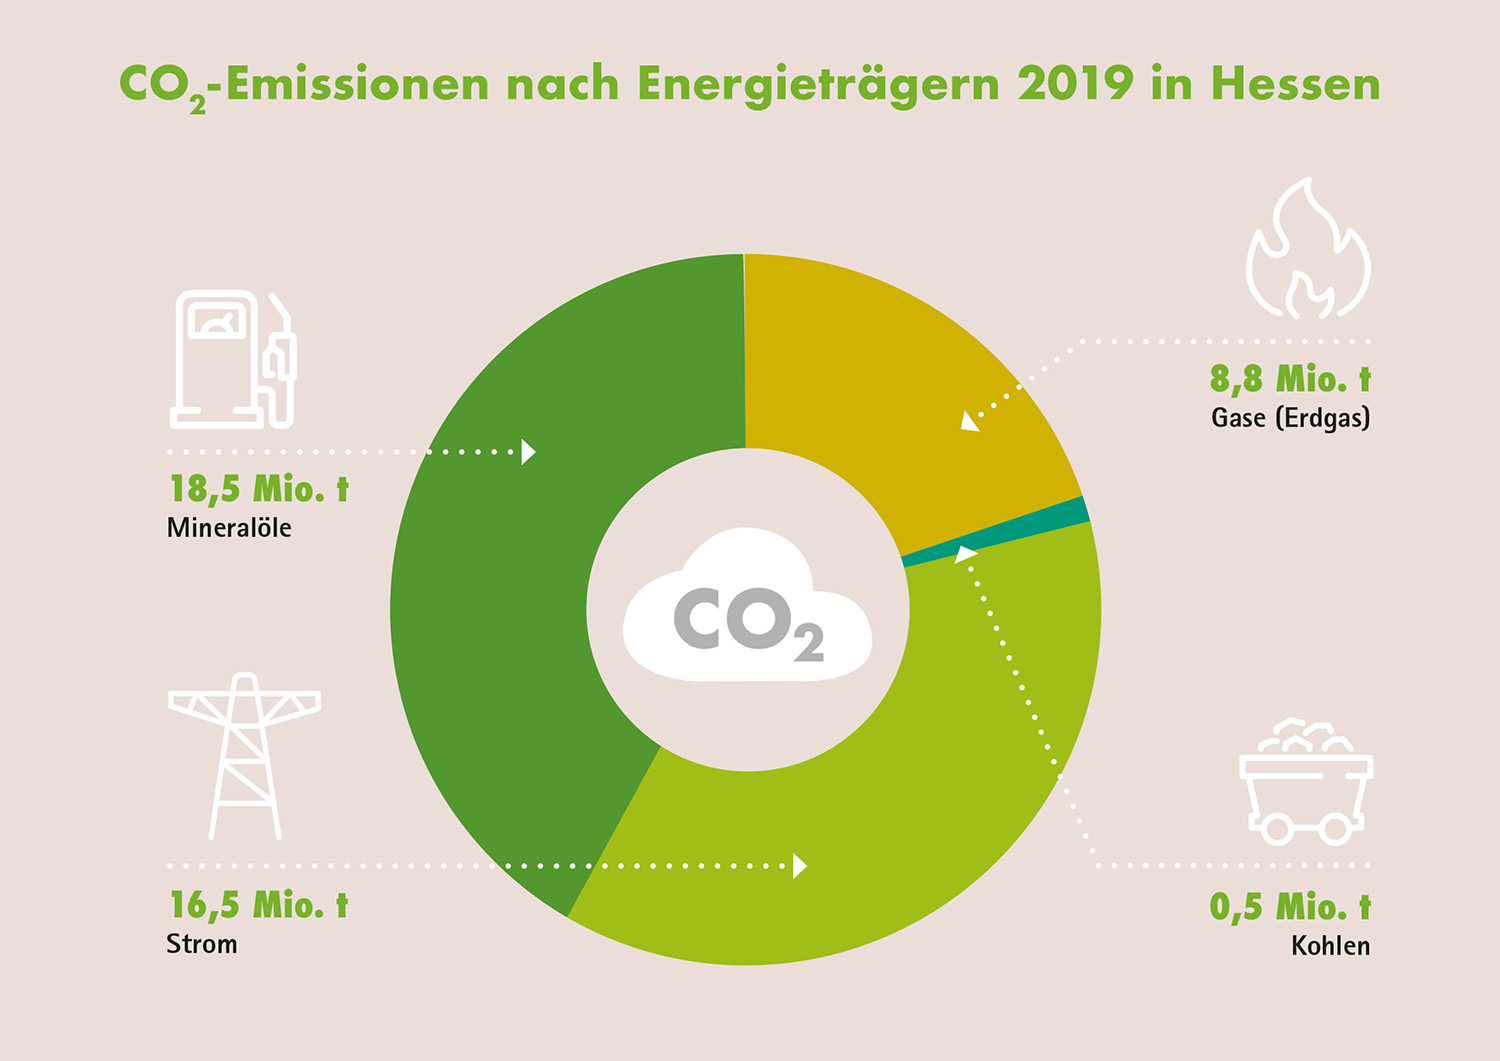 CO2-Emissionen nach Energieträgern in Hessen